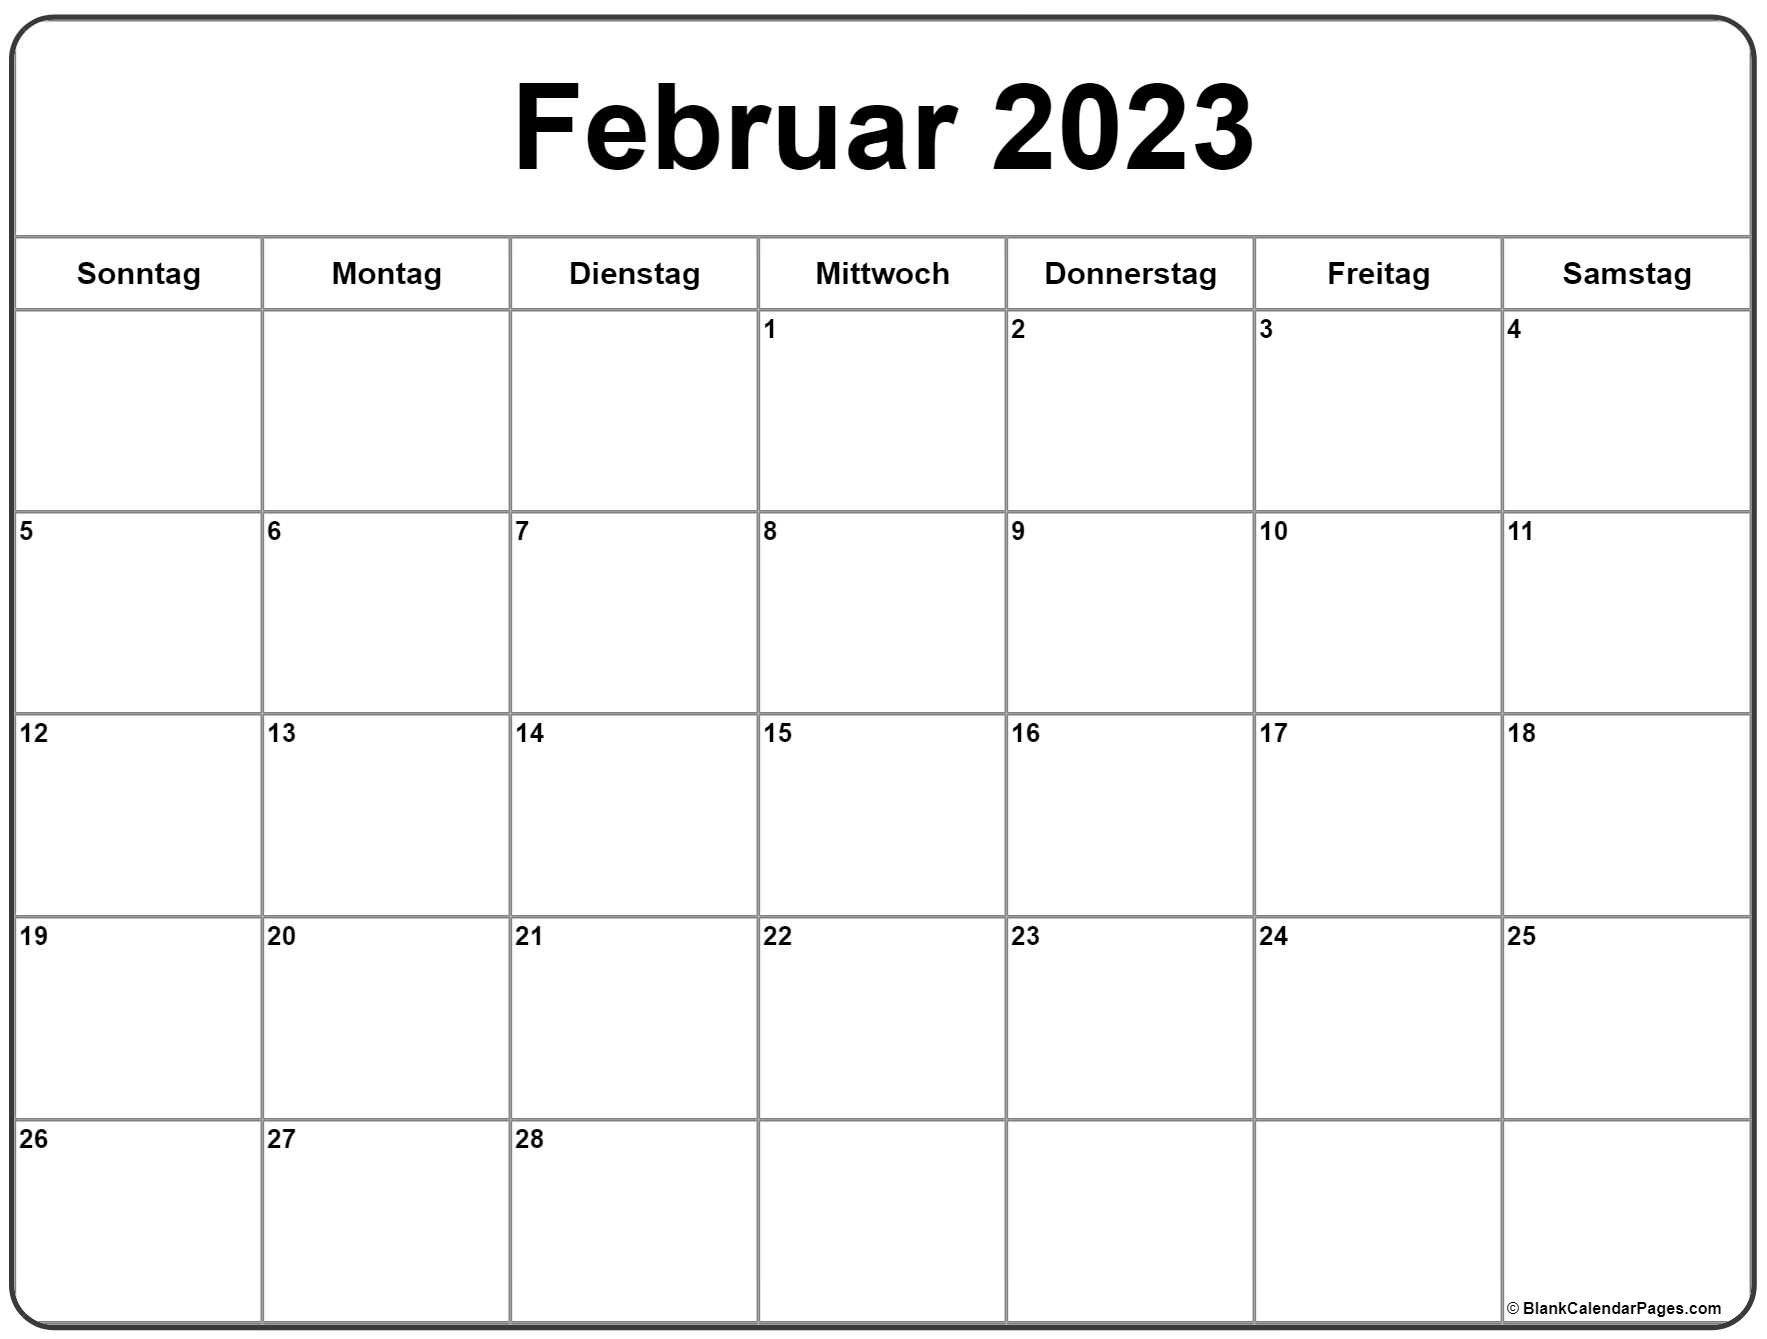 Гороскоп февраль 2023